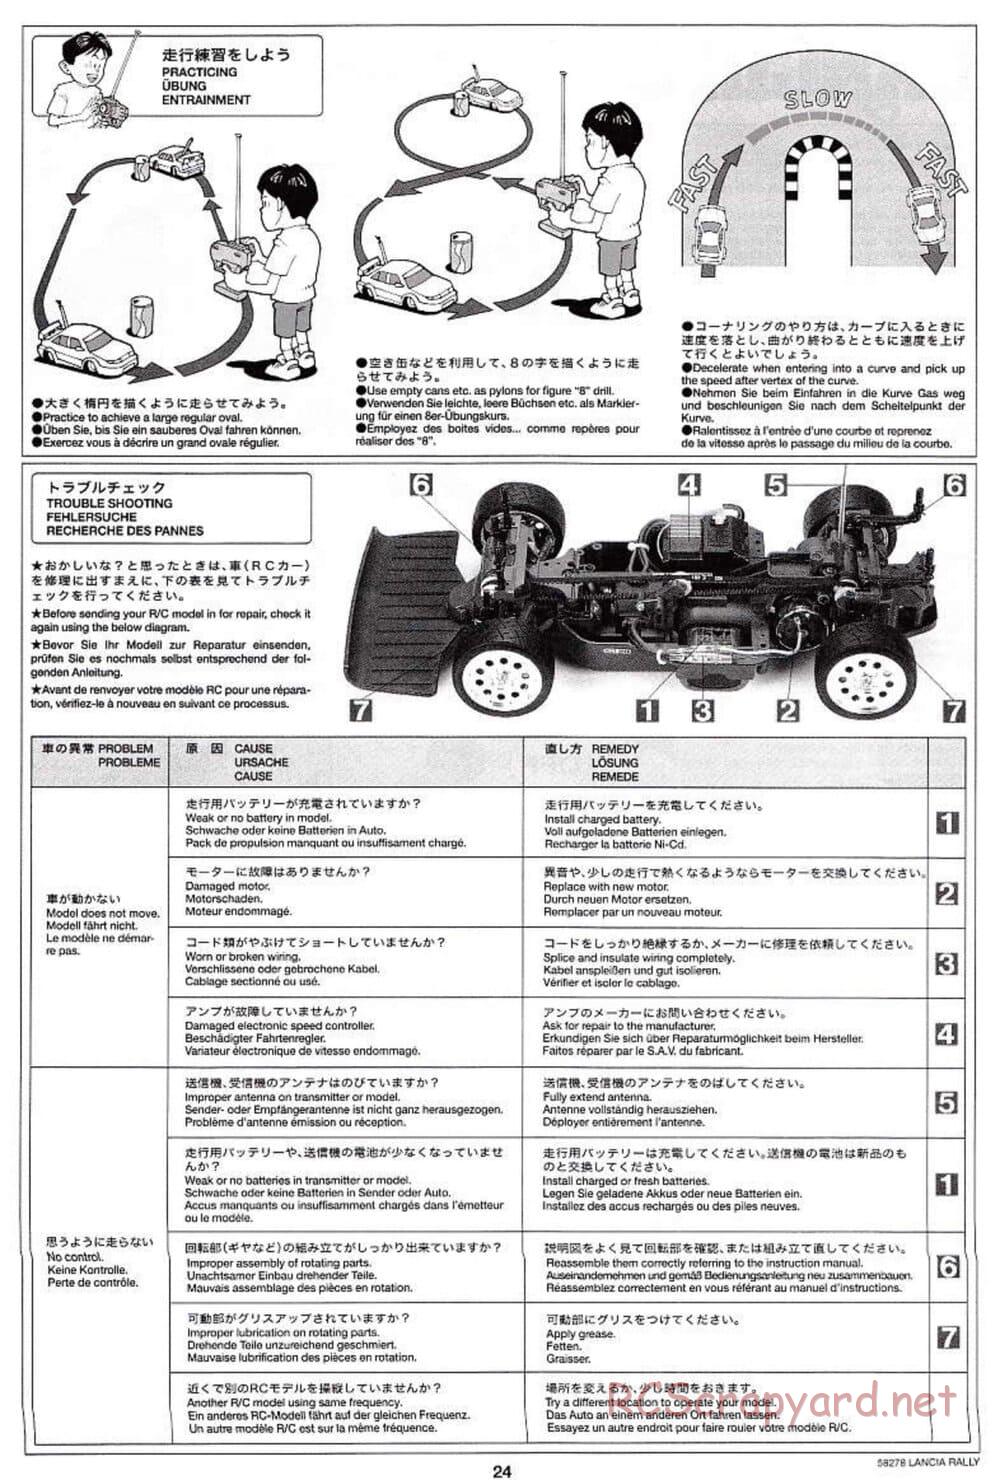 Tamiya - Lancia 037 Rally - TA-03RS Chassis - Manual - Page 24